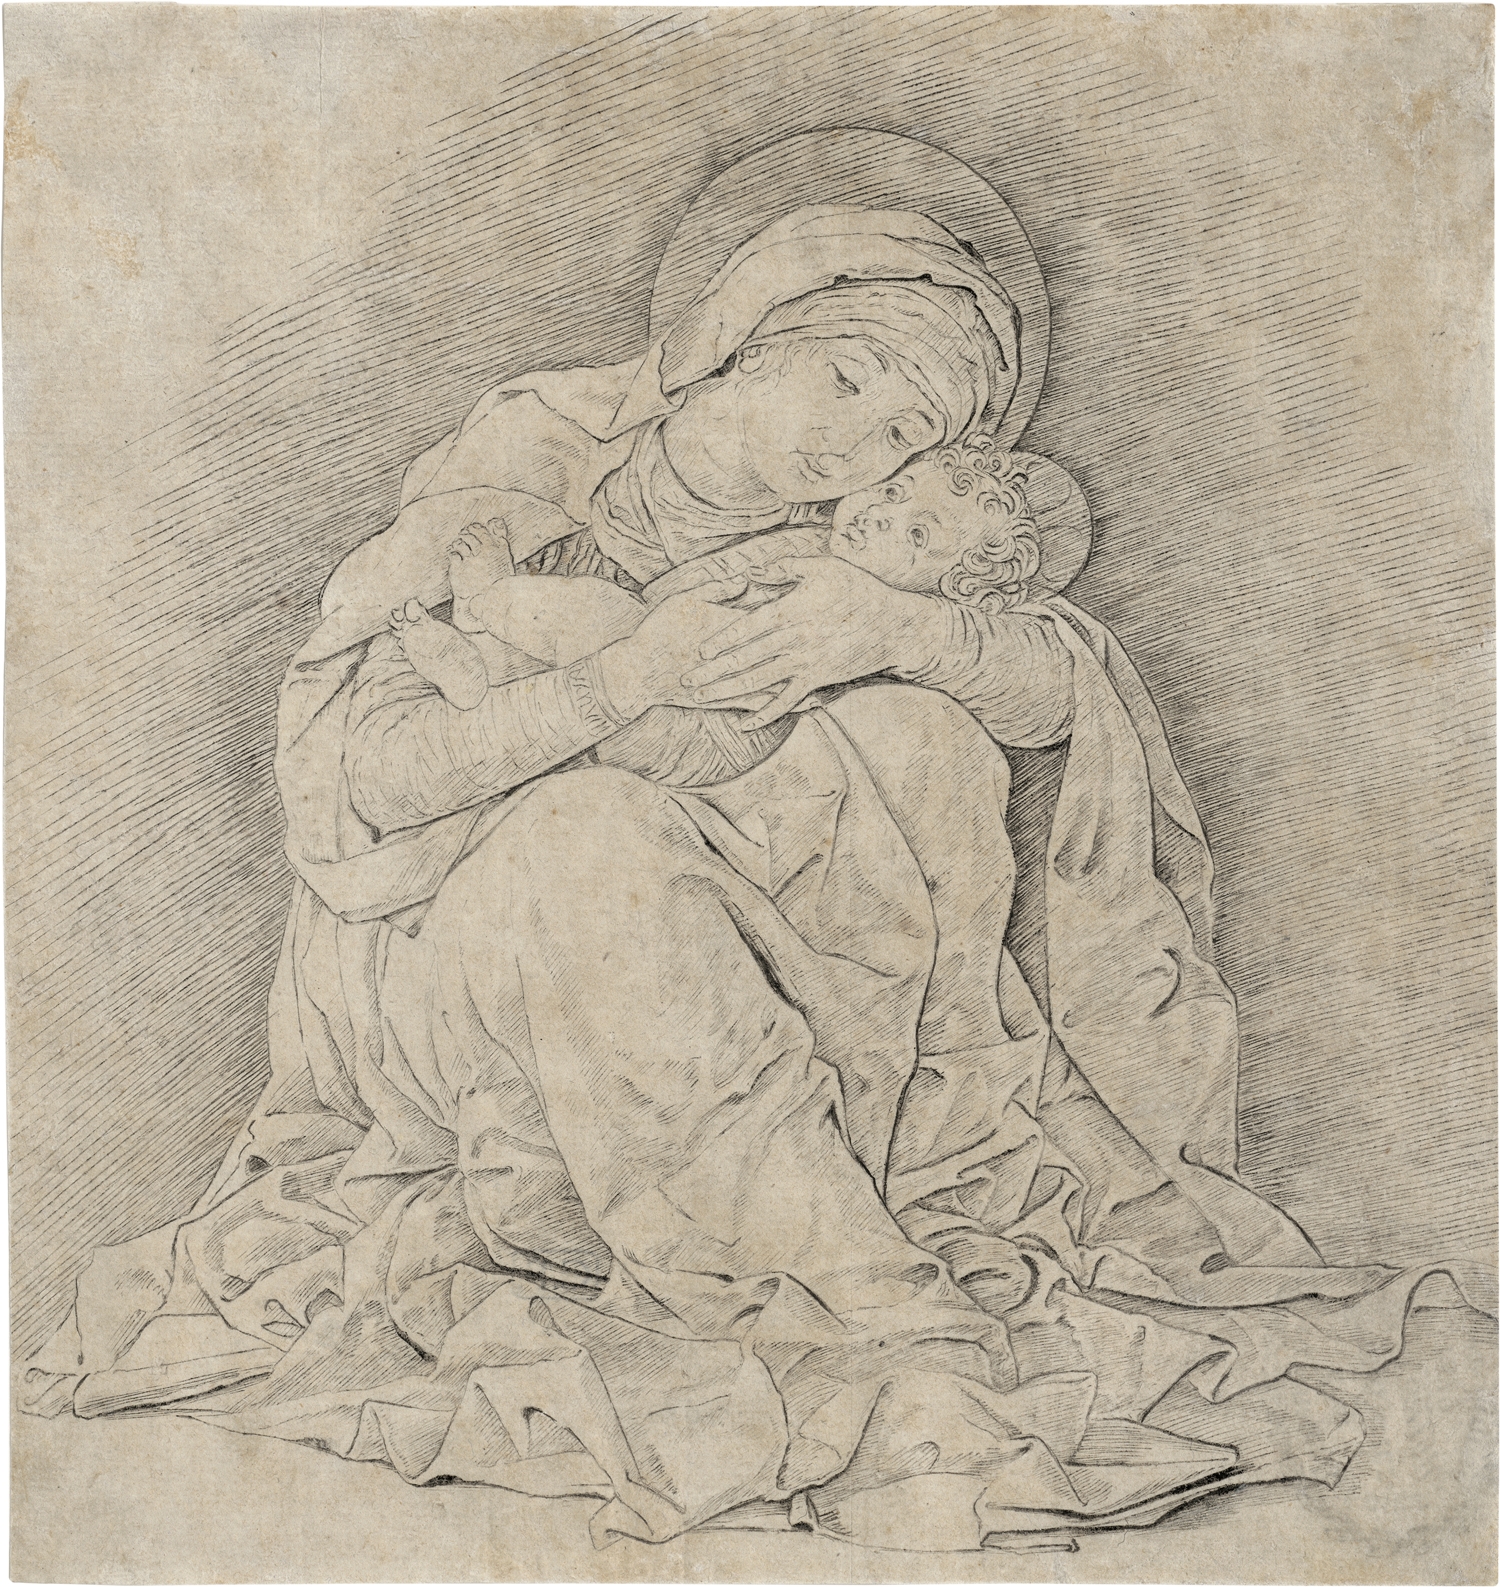 Die Madonna mit Kind by Andrea Mantegna, Um 1450-55